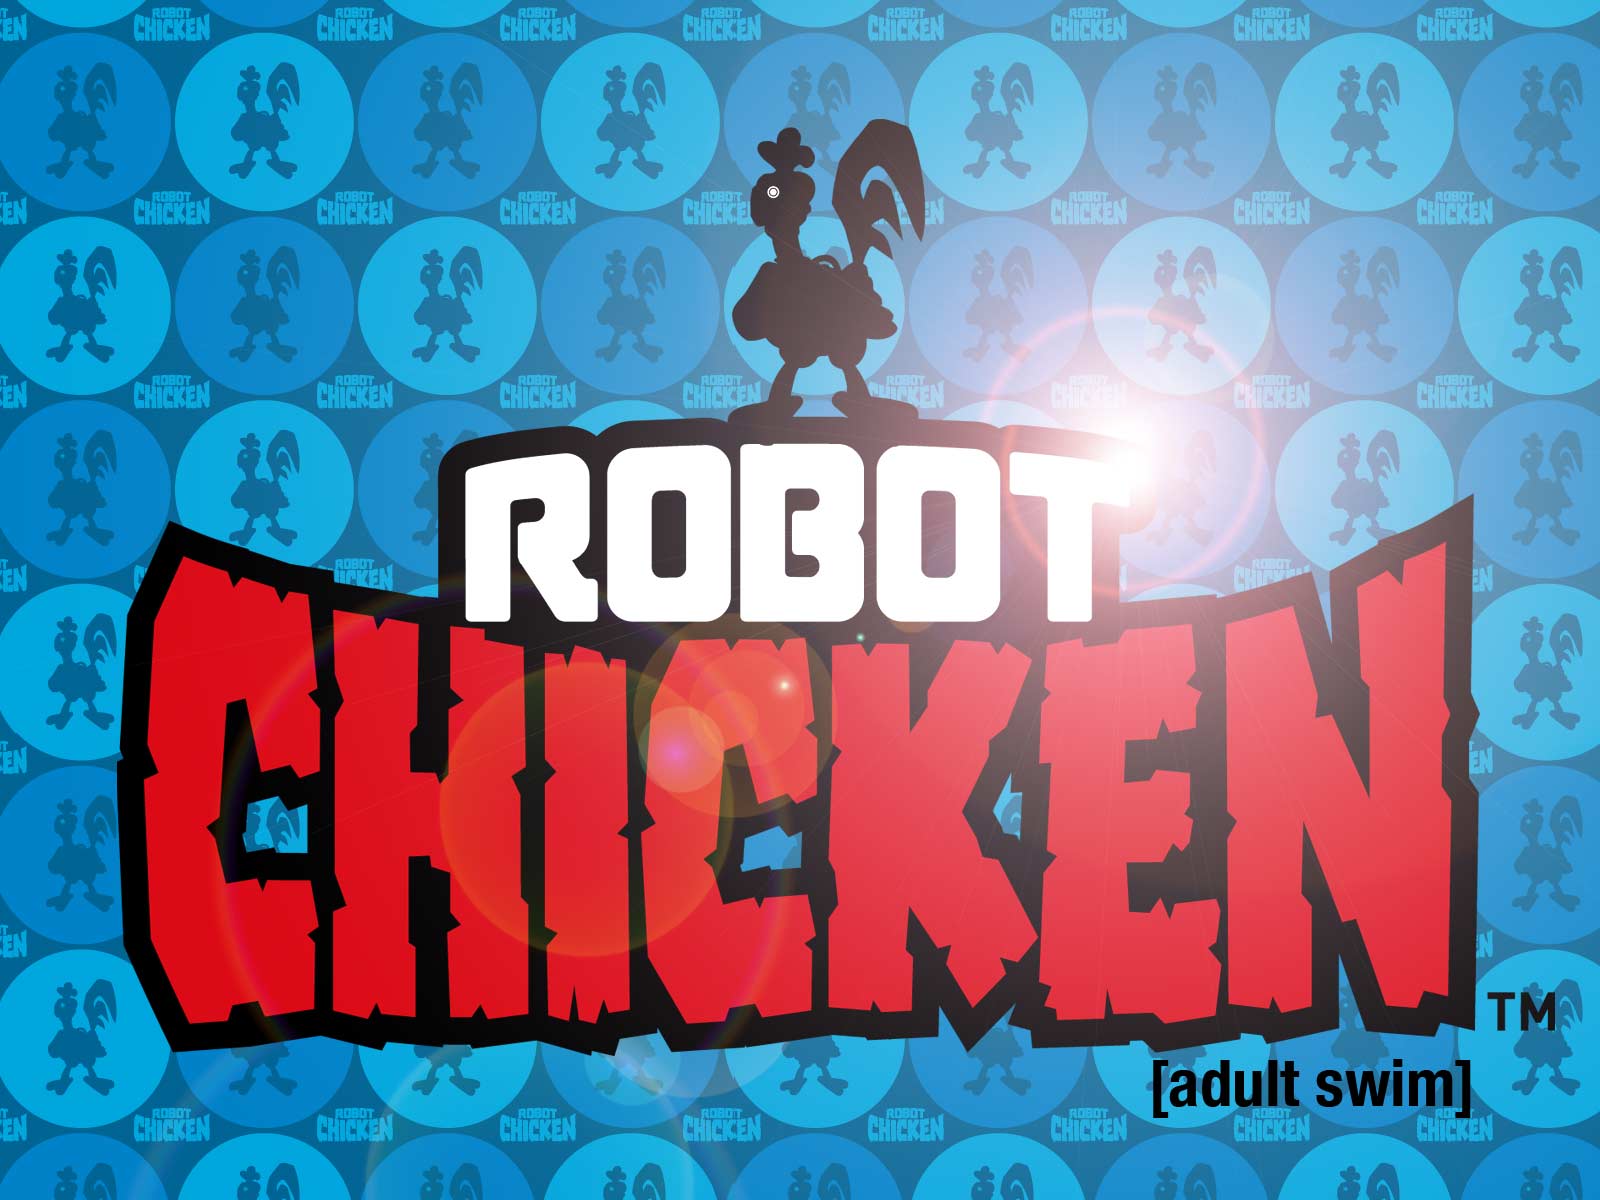 Robot chicken home alone